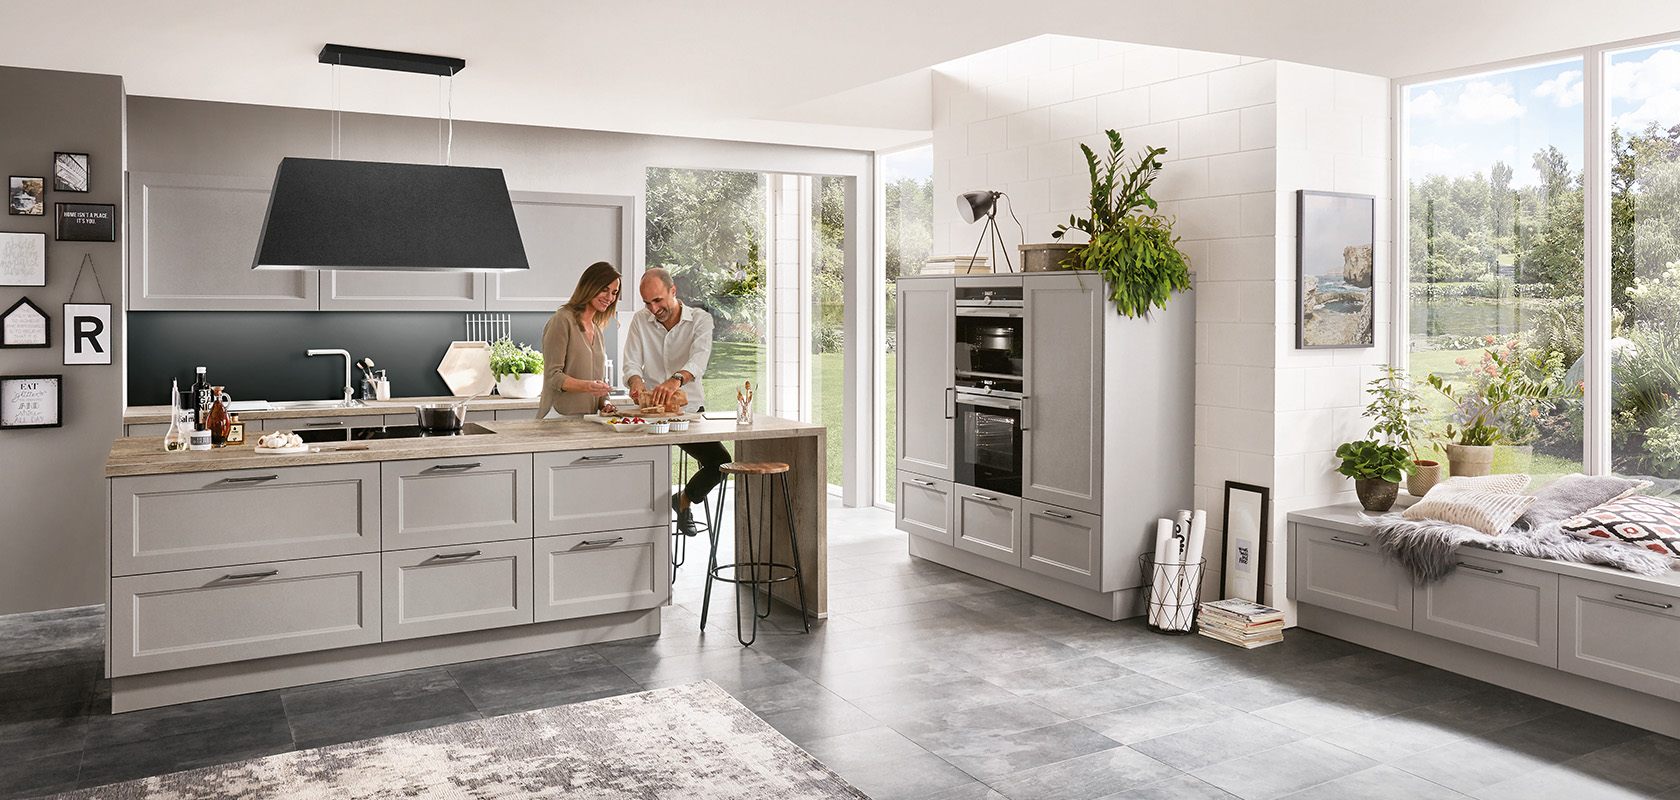 Una cocina moderna y espaciosa llena de luz natural, con electrodomésticos elegantes y una pareja preparando comida juntos en una encimera de isla.